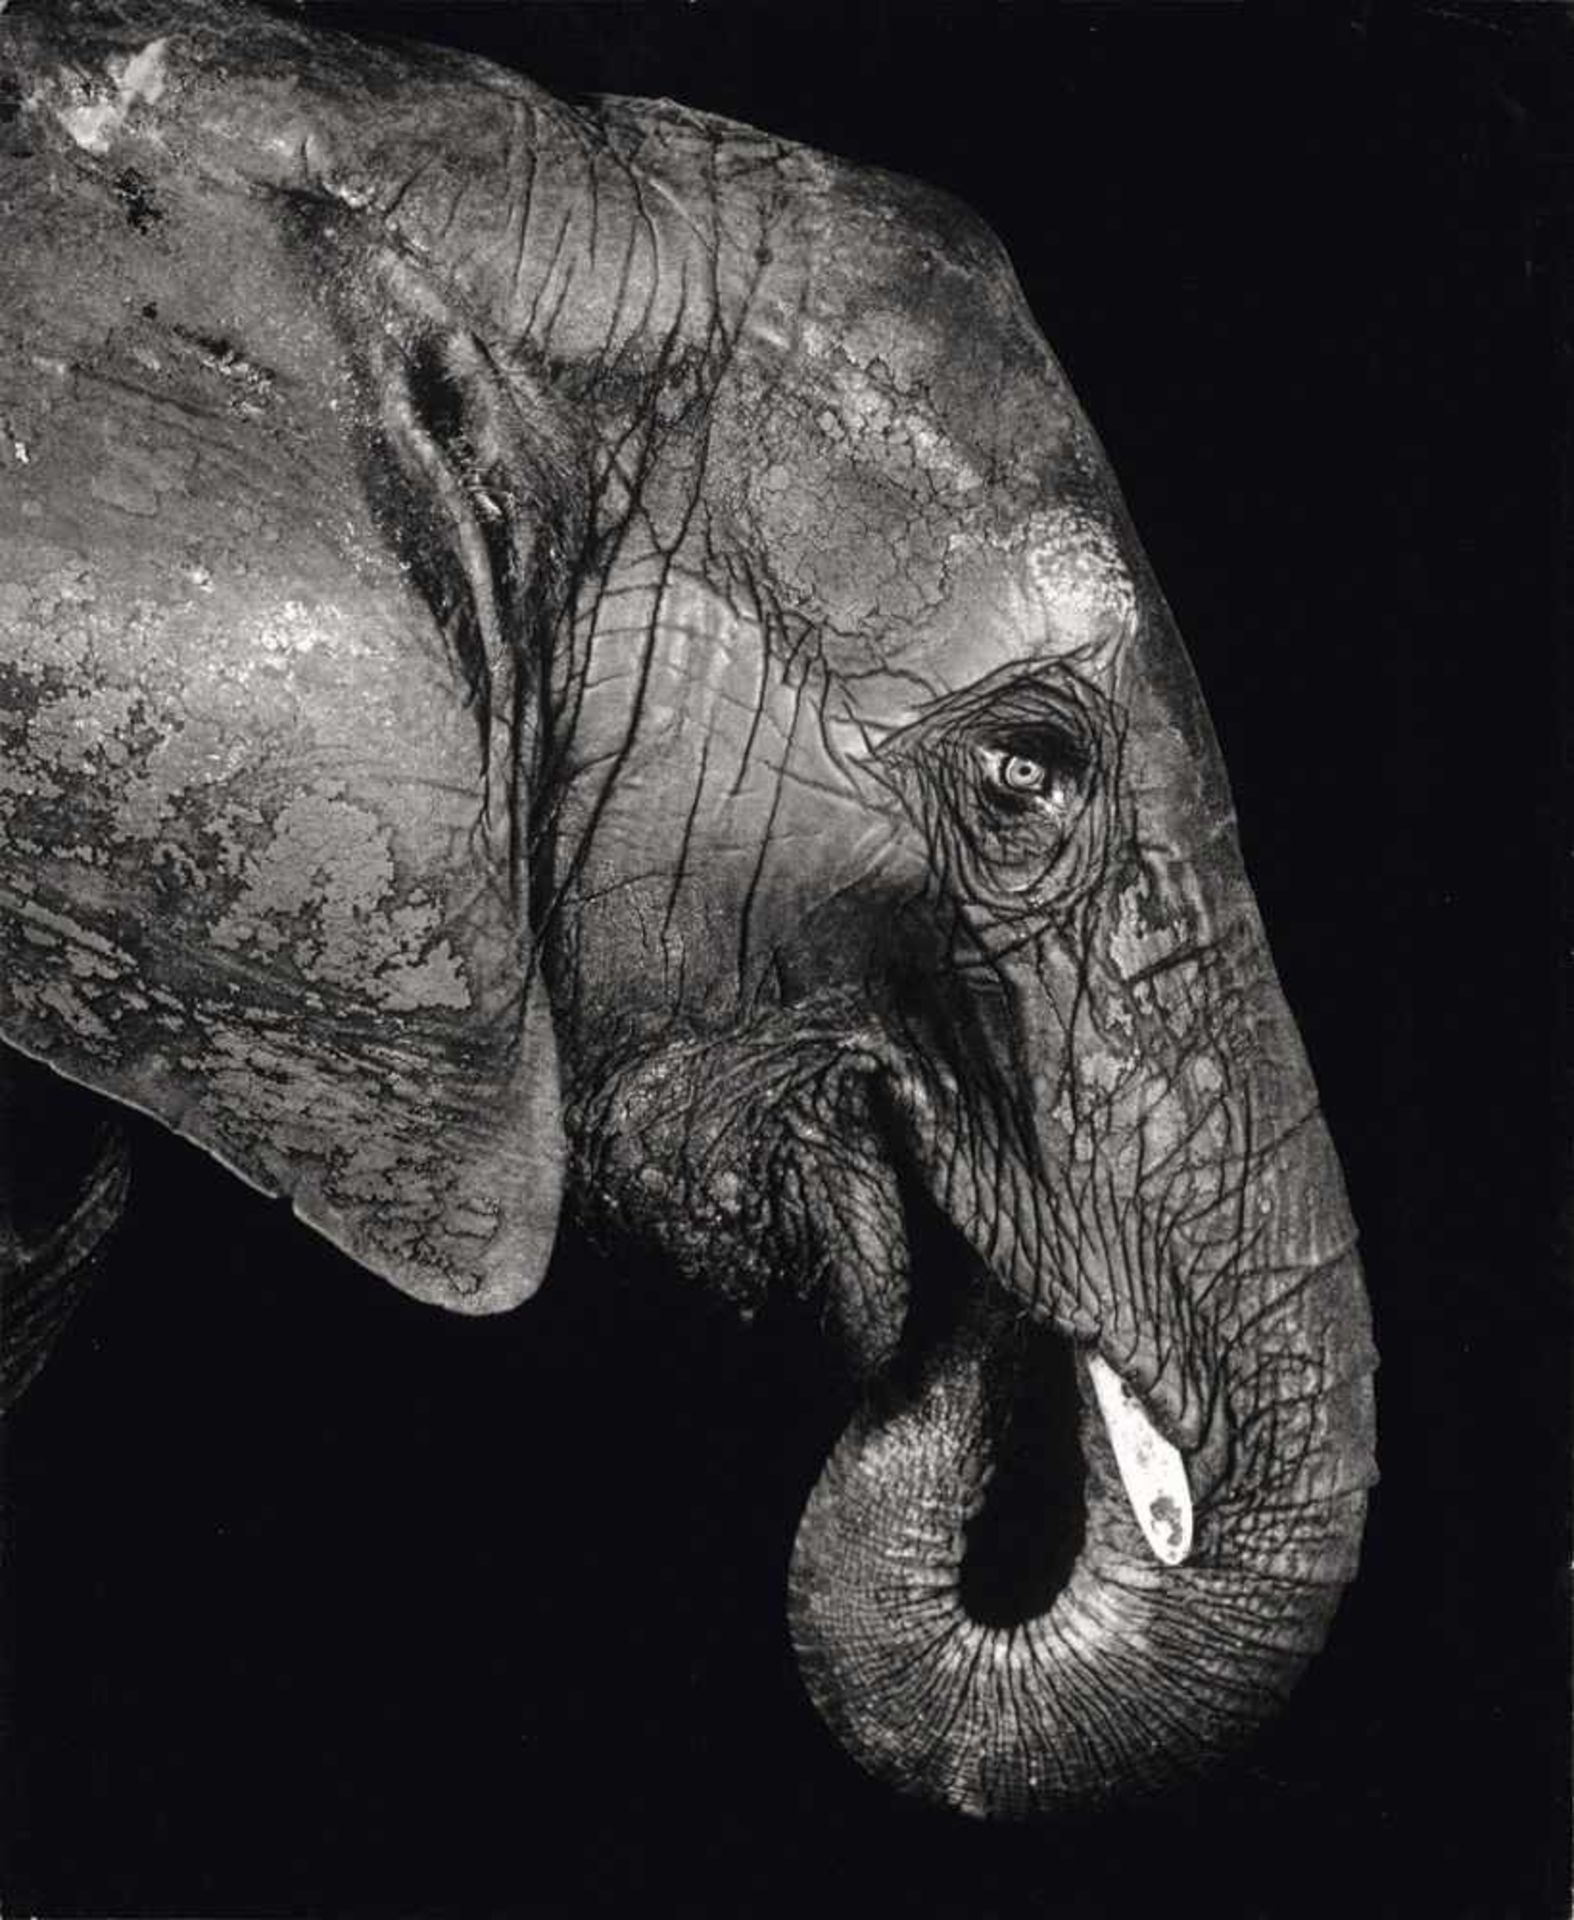 Schels, Walter: ElefantElefant. Gelatinesilberabzug 2000. 49,8 x 41 cm. Vom Fotografen mit Bleistift